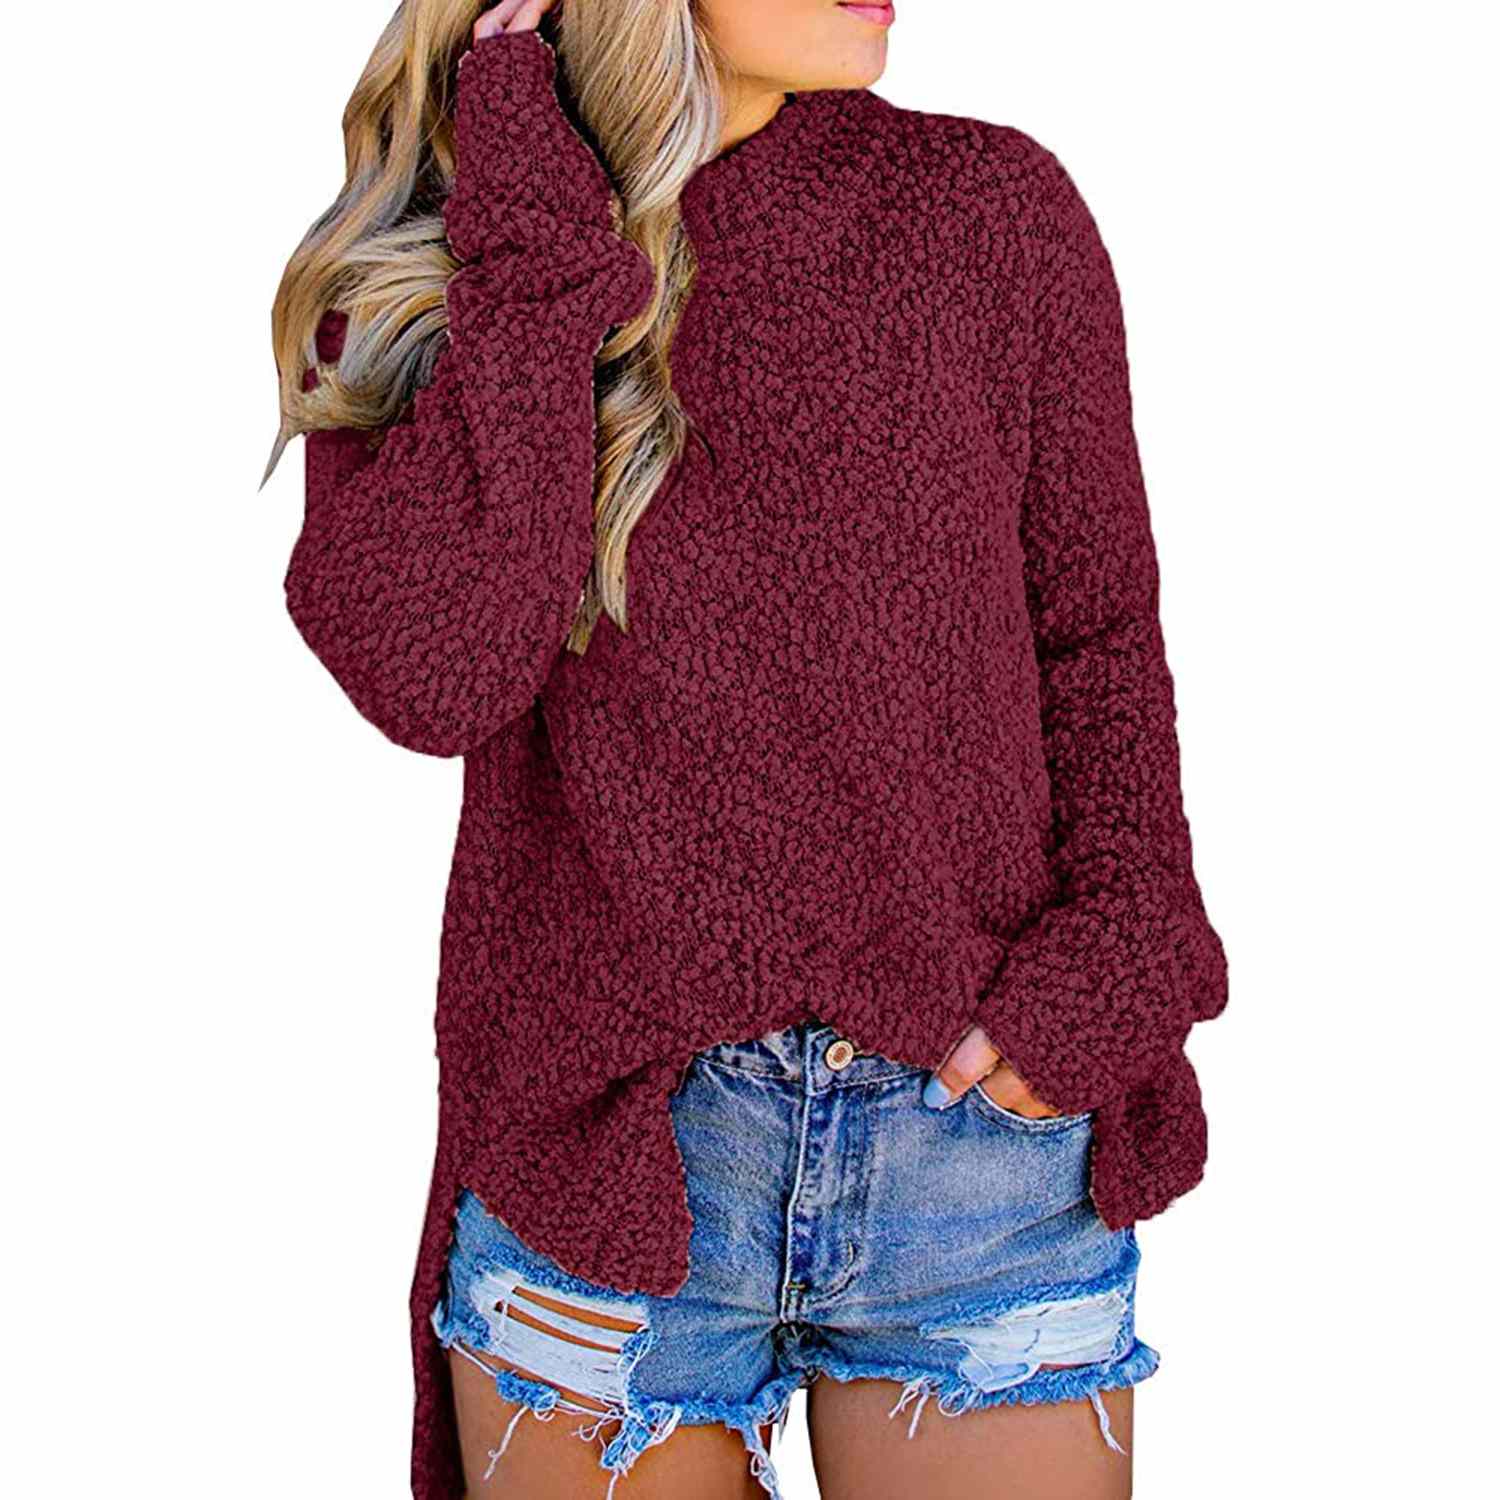 Imily Bela Womens Fuzzy Knitted Sweater Sherpa Fleece in Wine Red